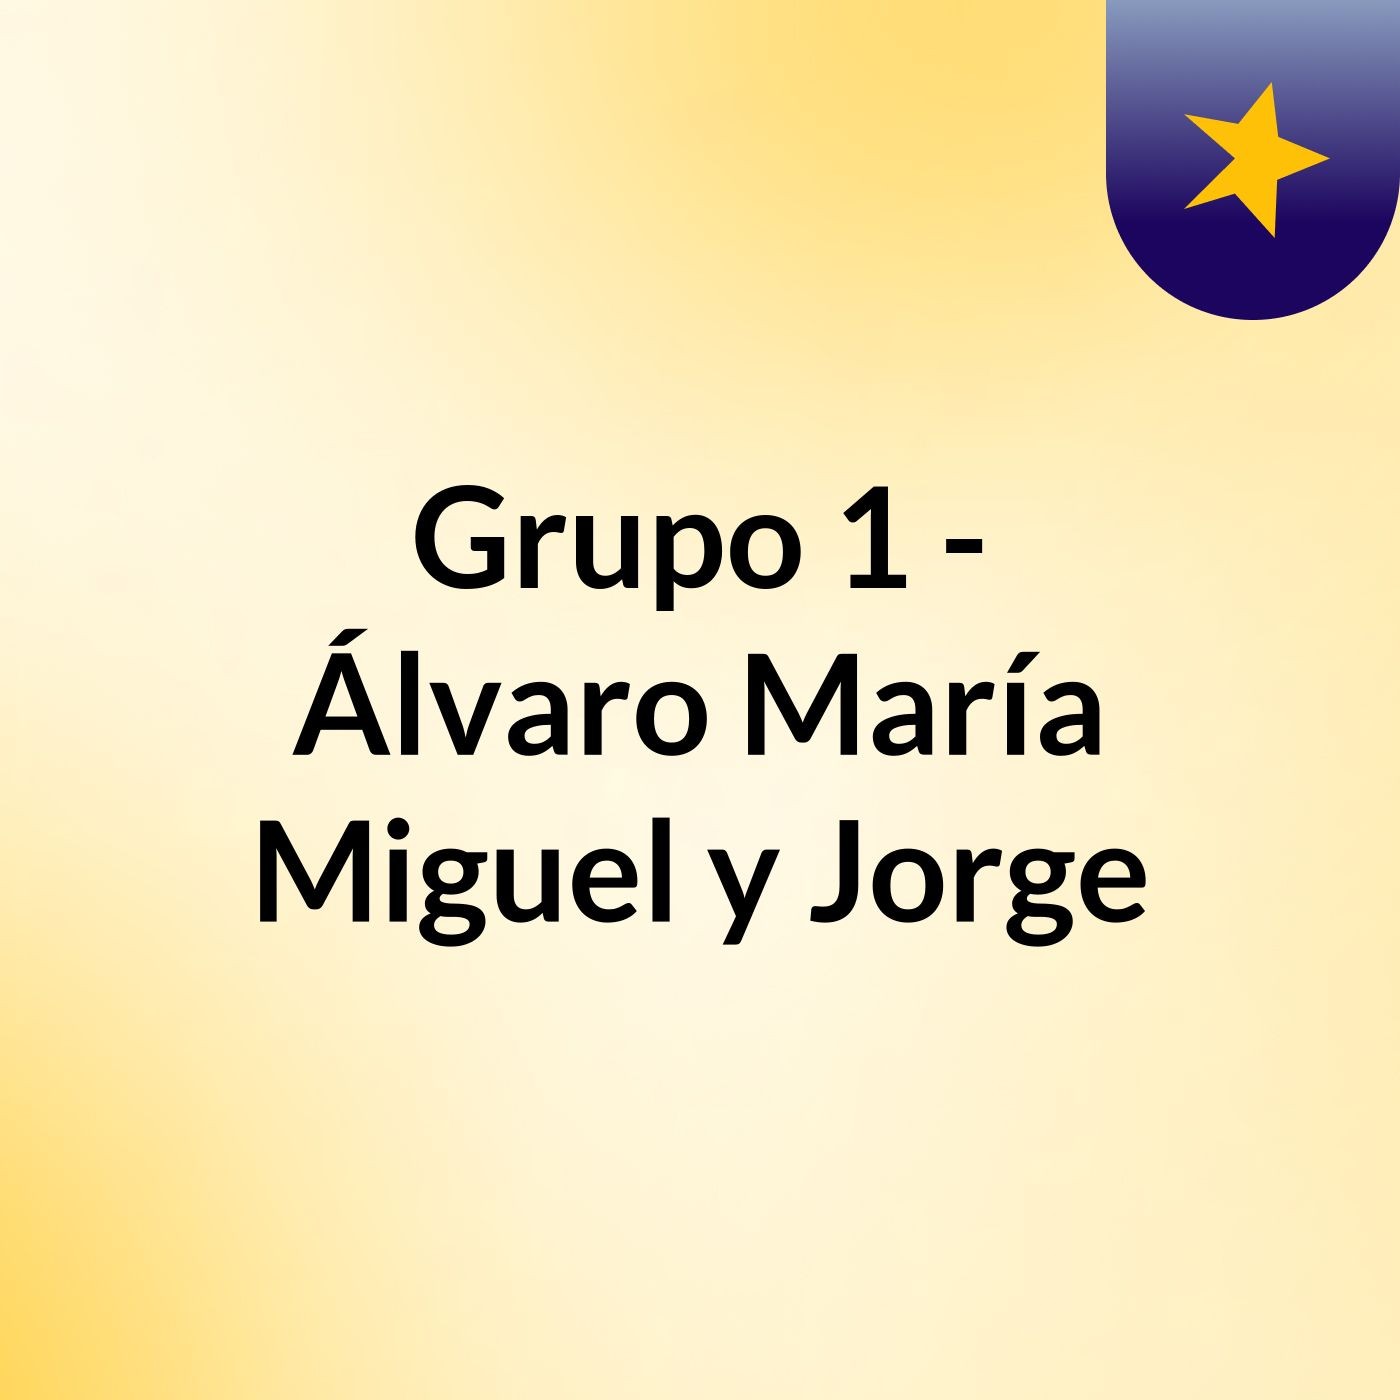 Grupo 1 - Álvaro, María, Miguel y Jorge